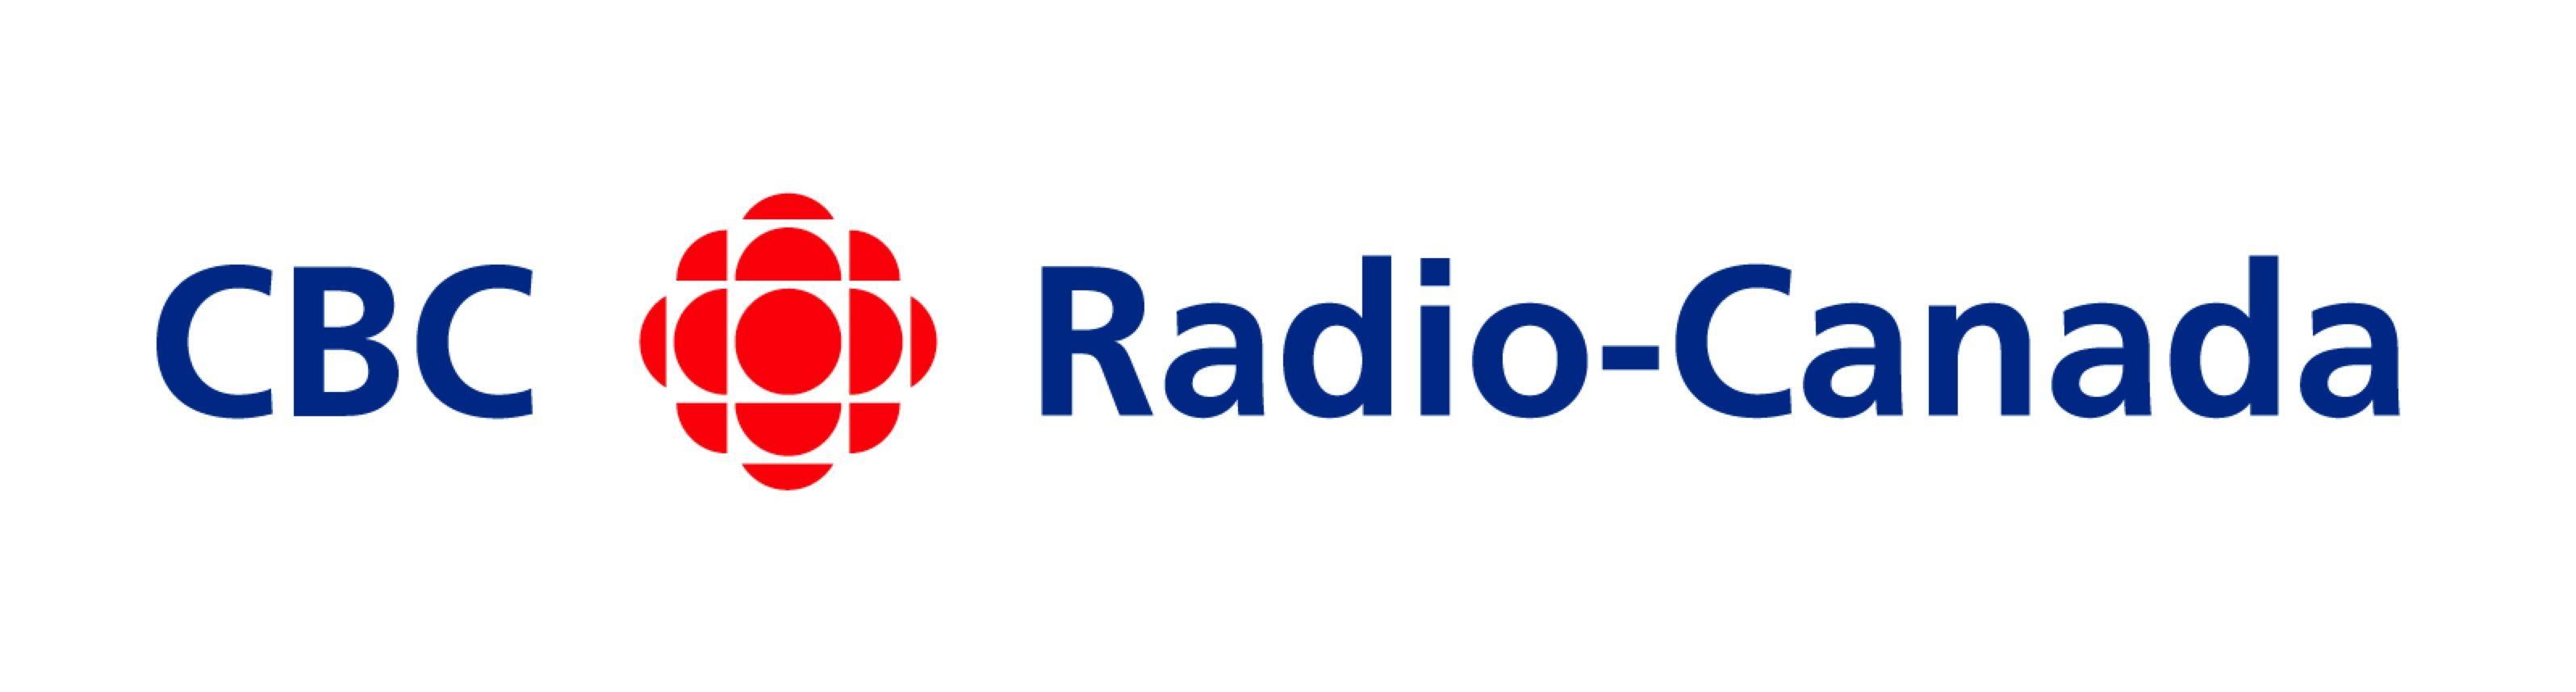 CBC Radio Canada Logo - CBC Radio Canada logo